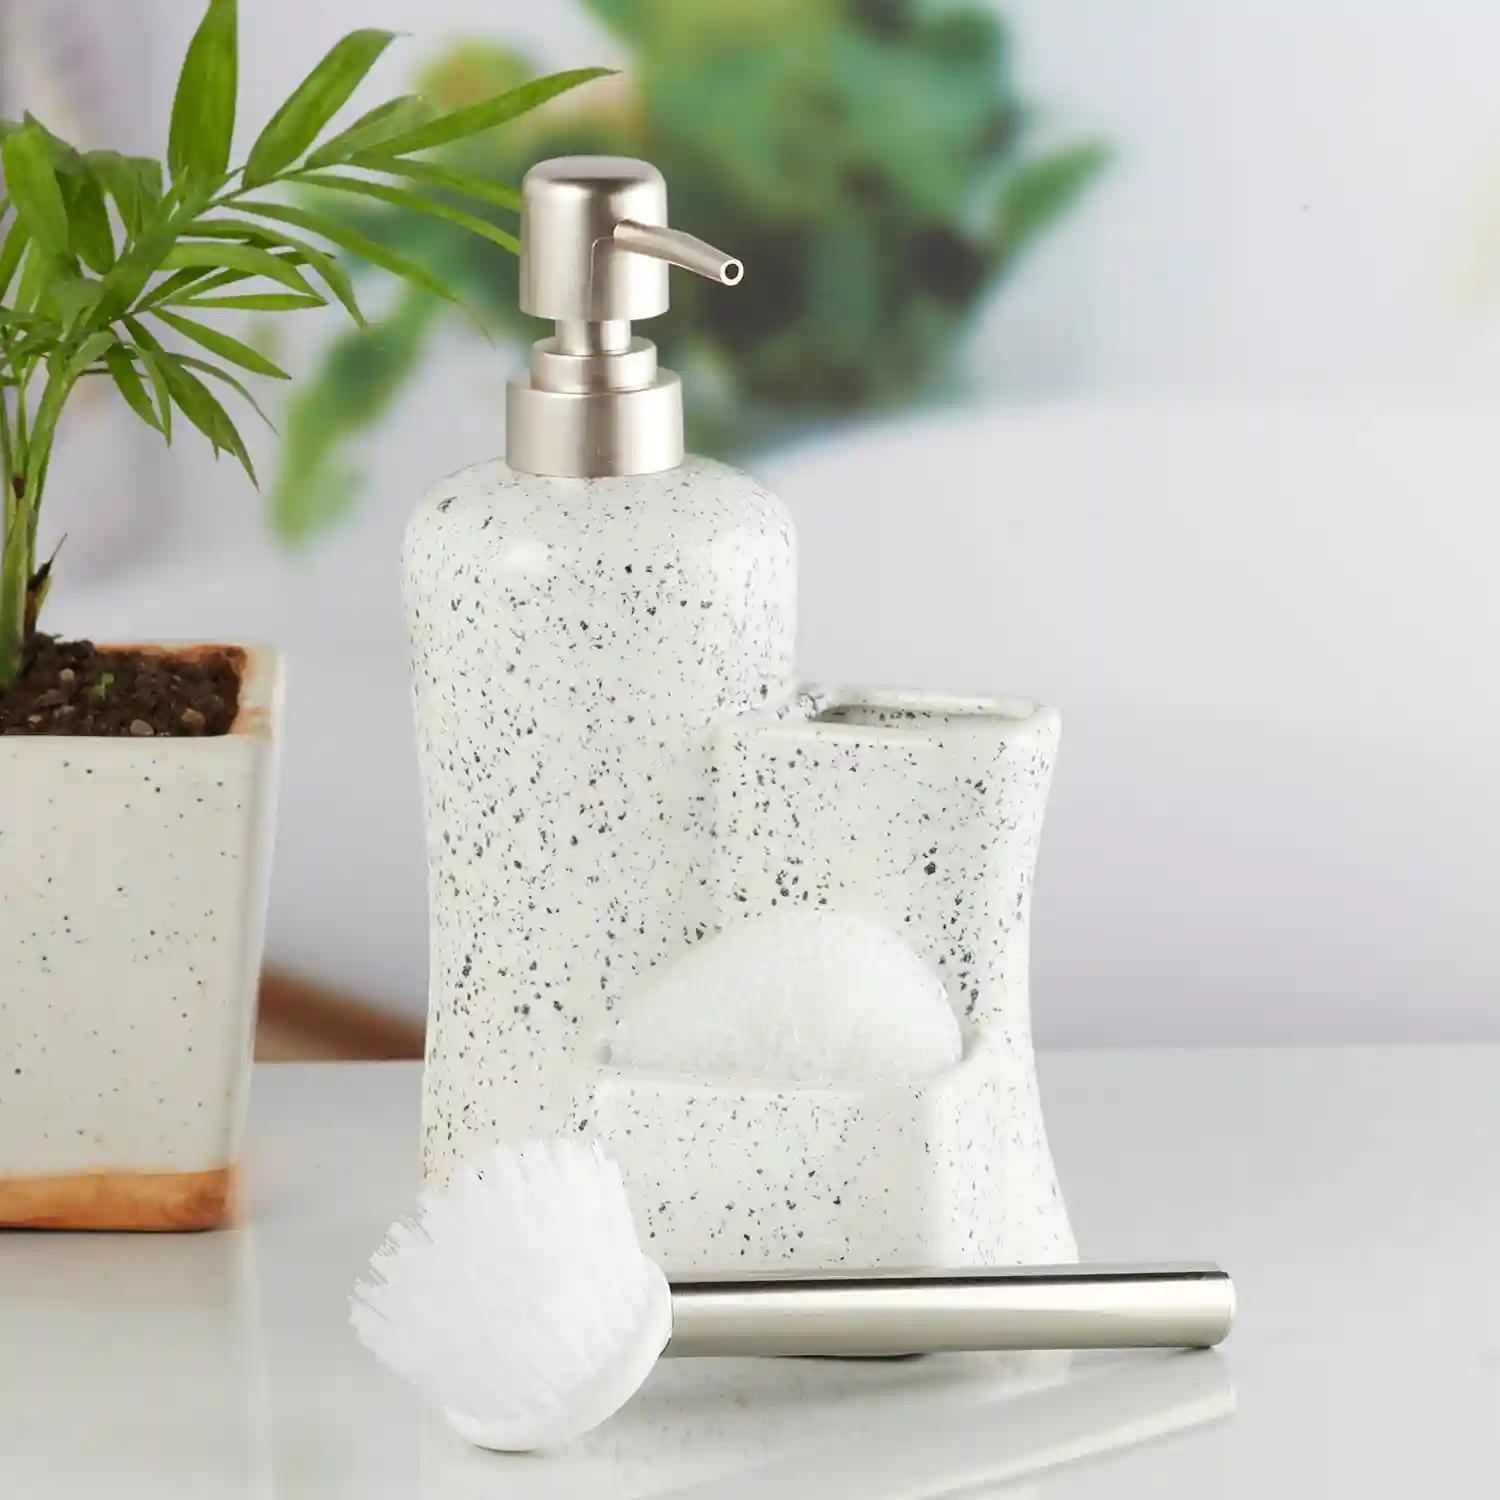 Kookee Ceramic Soap Dispenser for Bathroom handwash, refillable pump bottle for Kitchen hand wash basin, Set of 3 - Multicolor (10329)